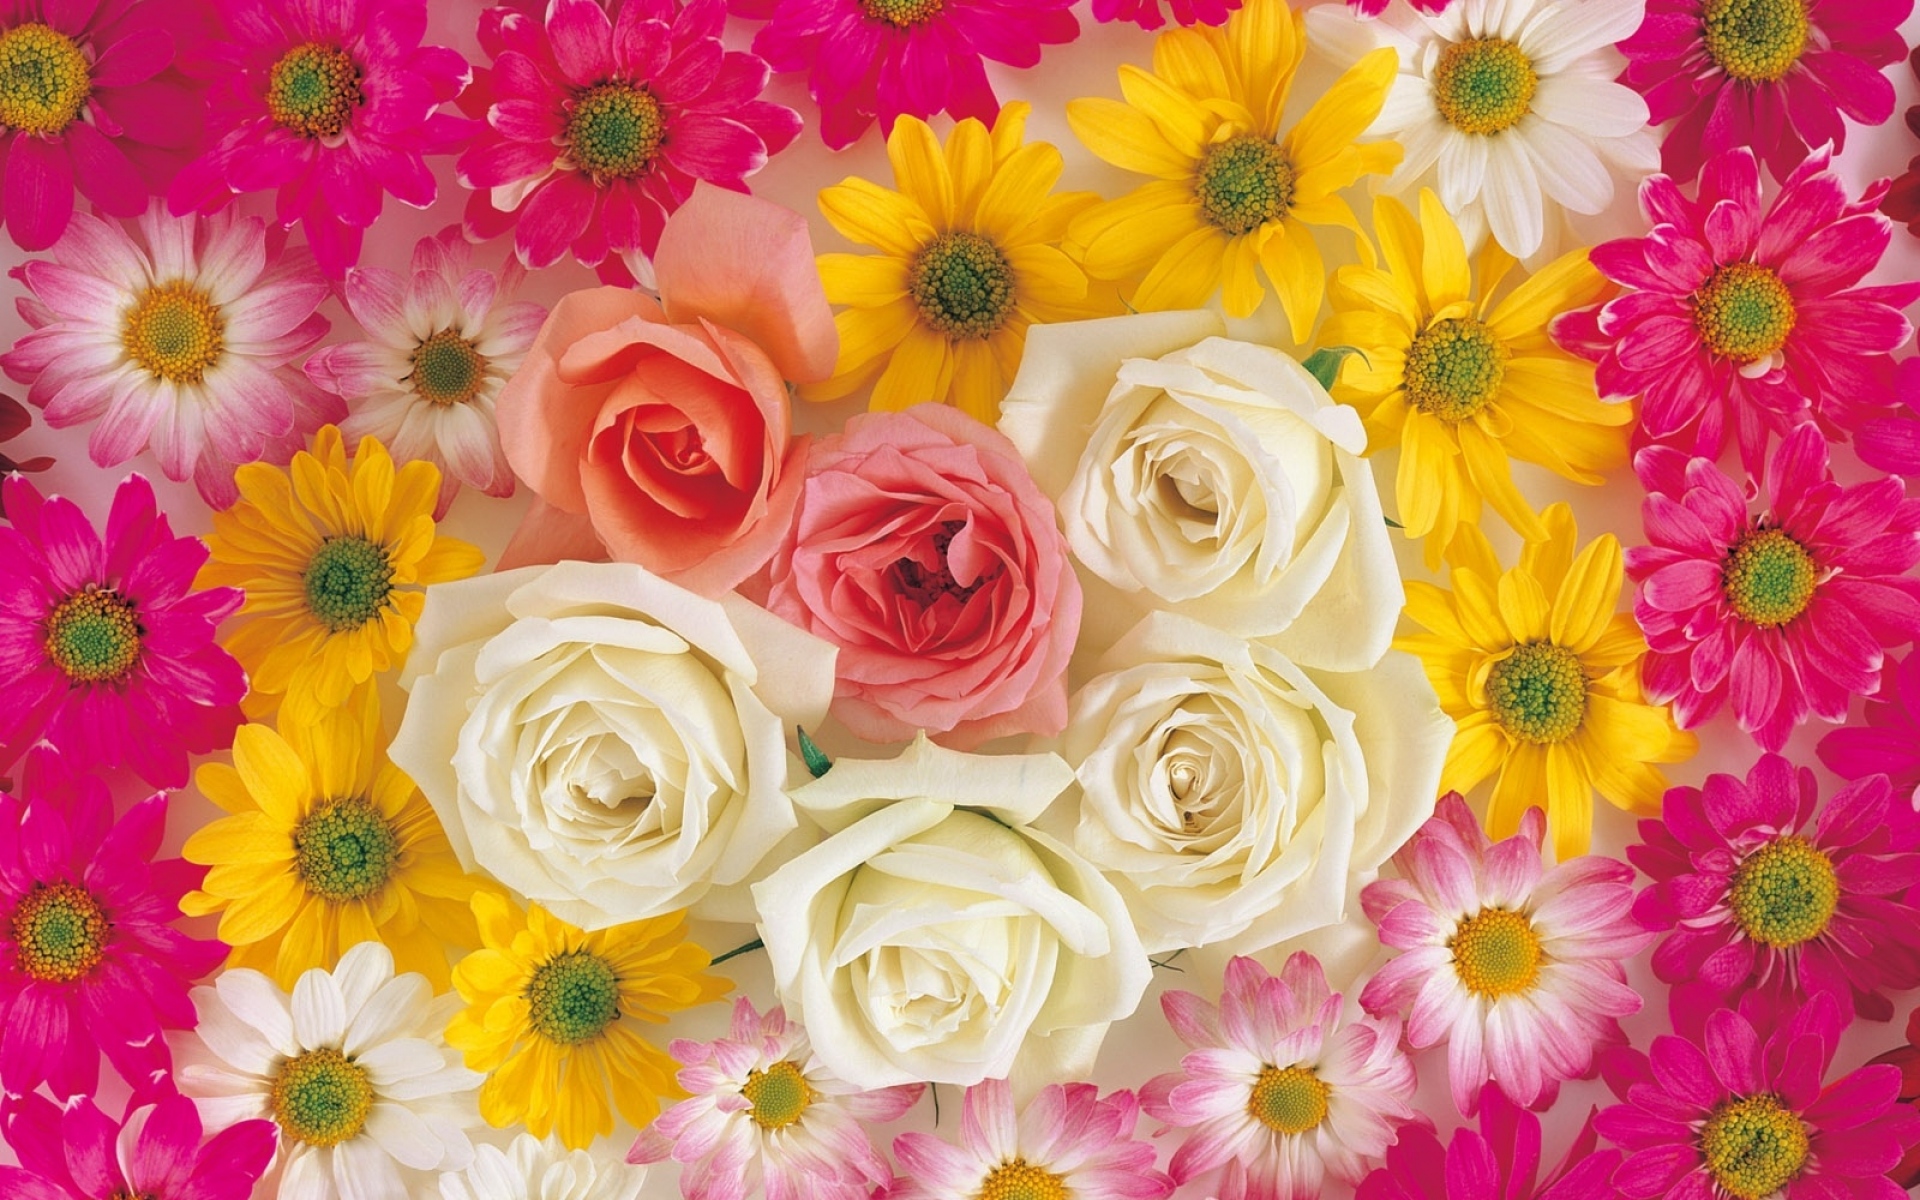 Картинки Розы, хризантемы, цветы, яркие, яркие, композиции фото и обои на рабочий стол